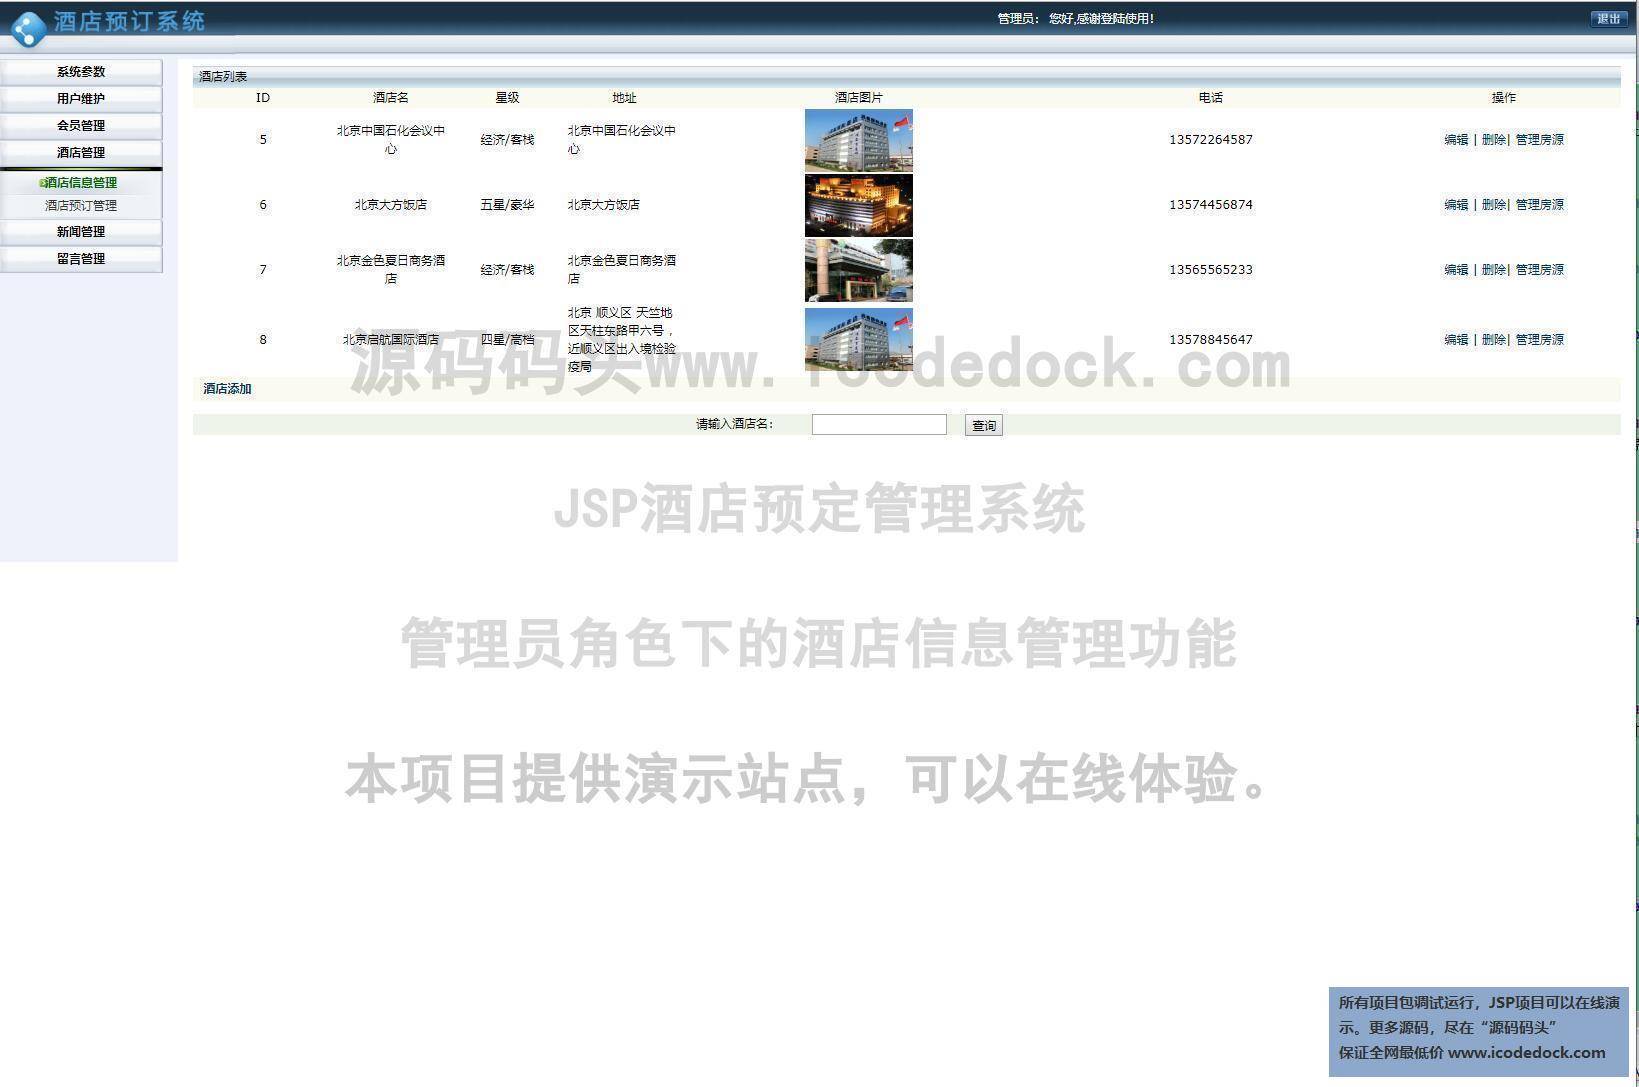 源码码头-JSP酒店预定管理系统-管理员角色-酒店信息管理